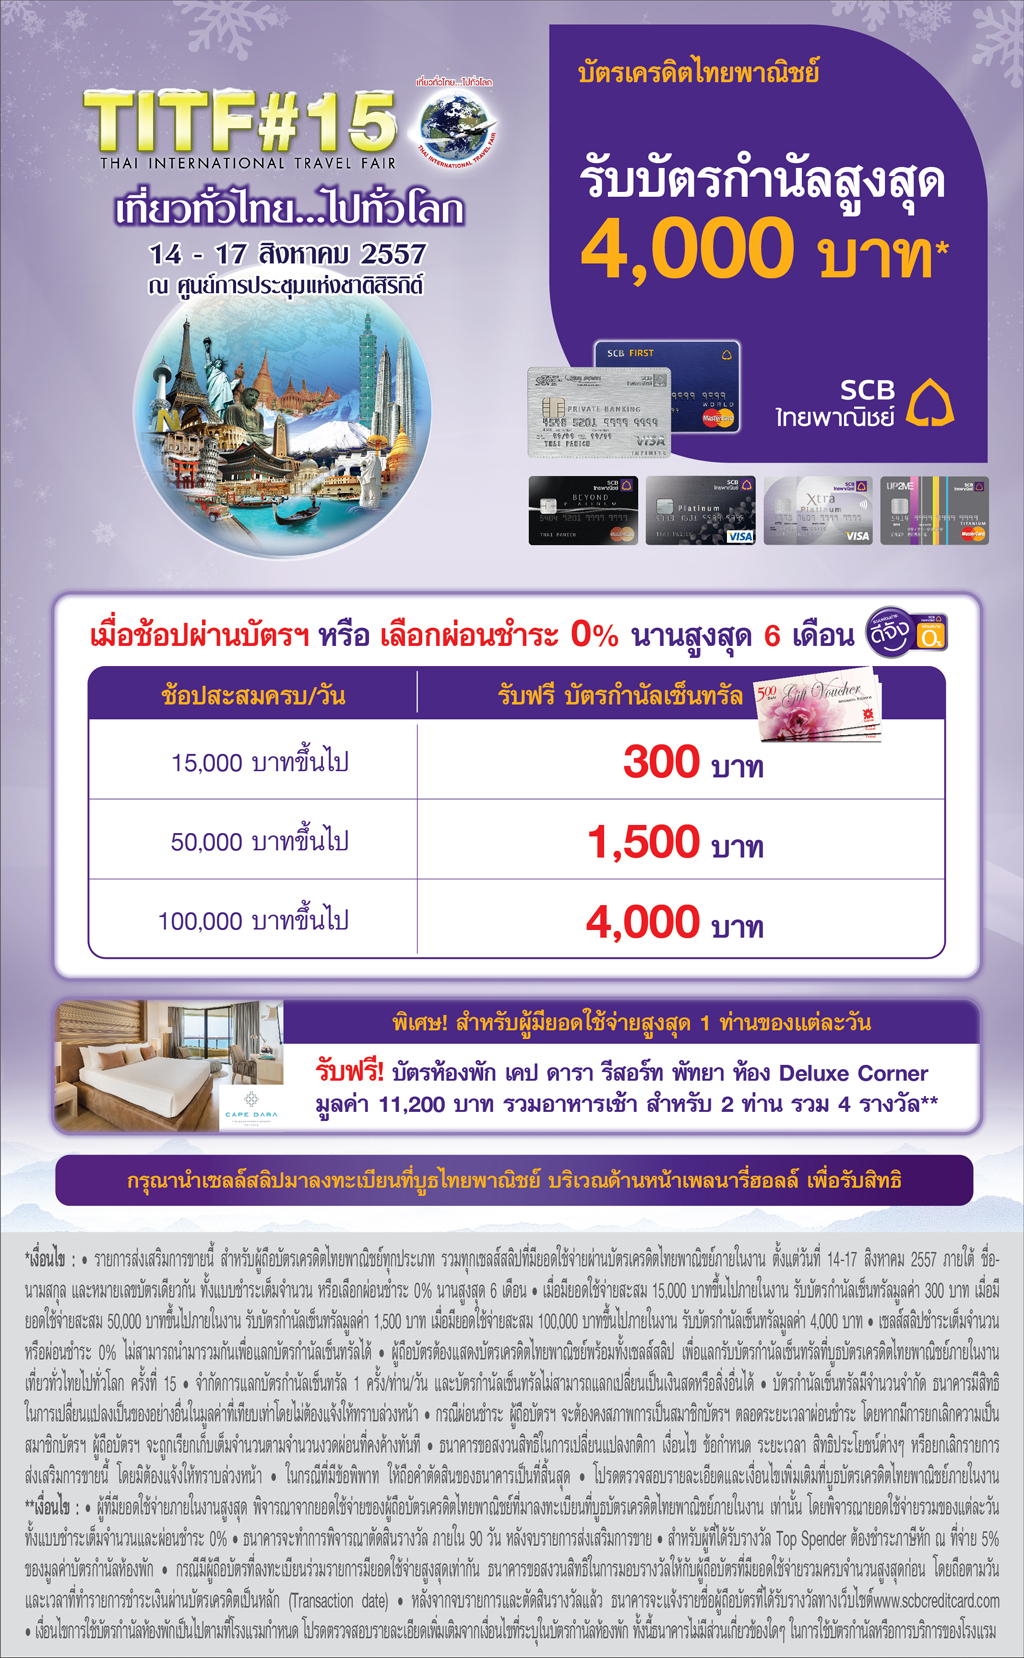 Thai International Travel Fair 2014